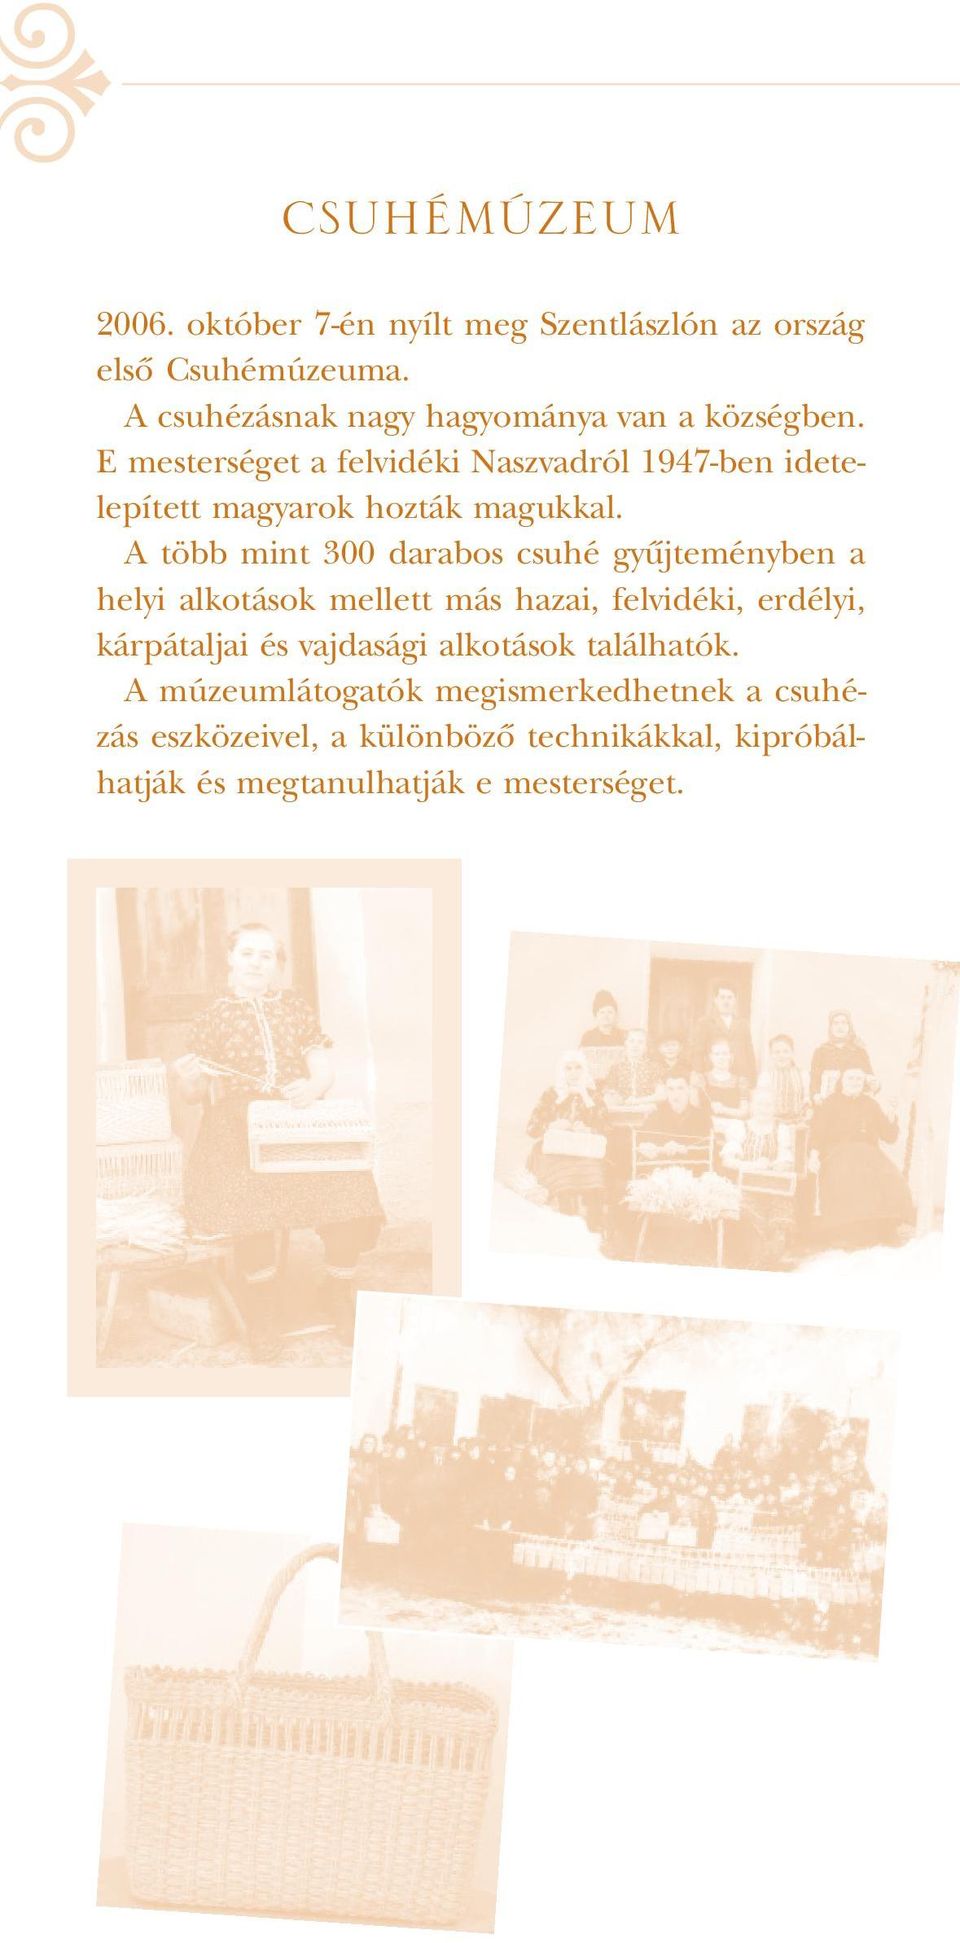 E mesterséget a felvidéki Naszvadról 1947-ben idetelepített magyarok hozták magukkal.